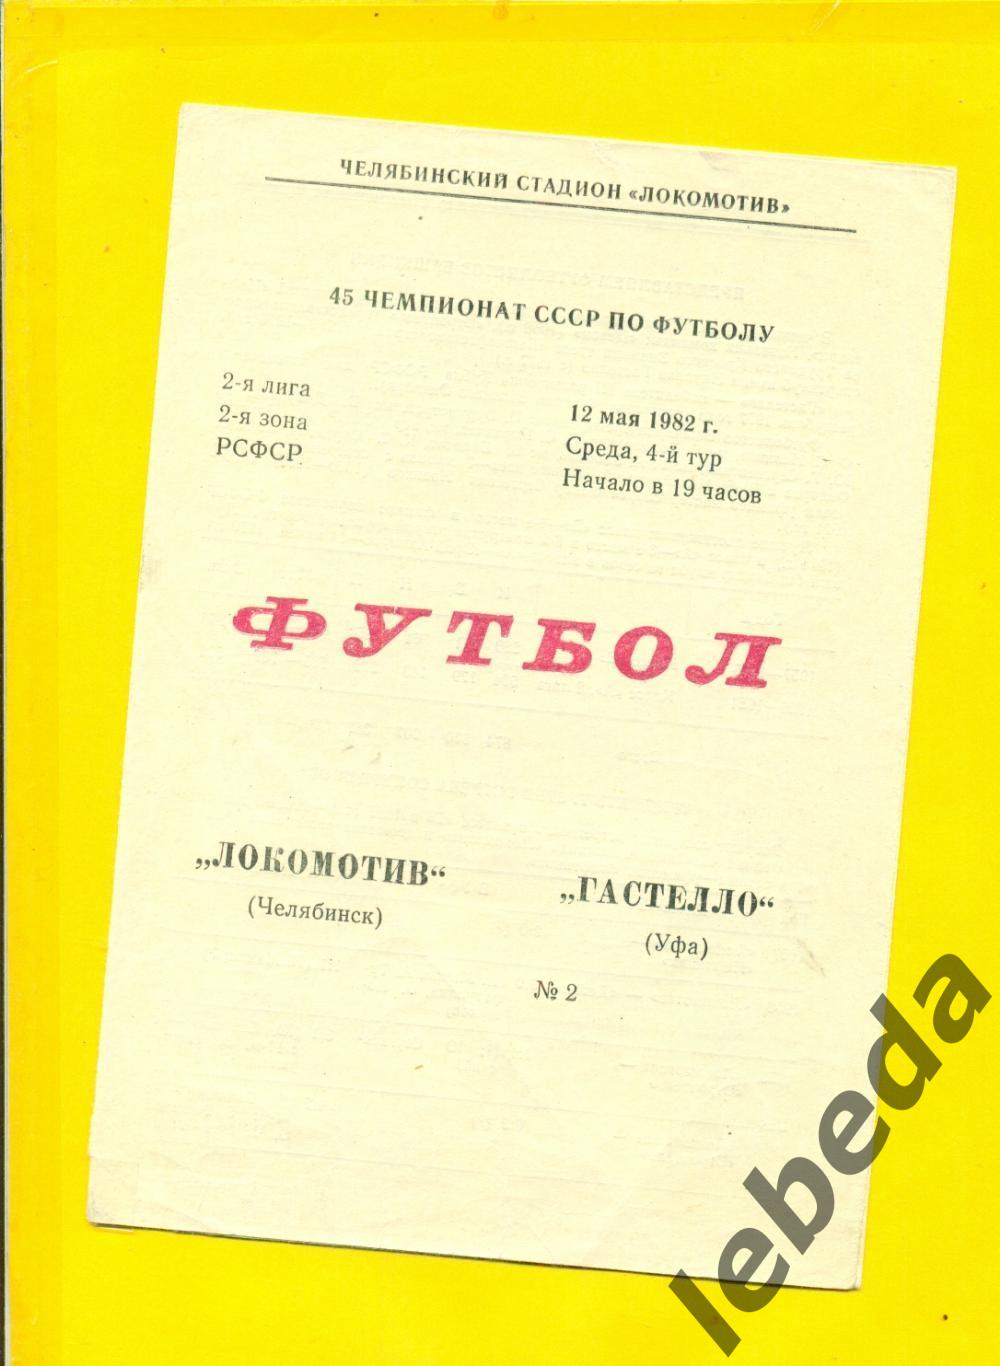 Локомотив Челябинск - Гастелло Уфа - 1982 г.(12.05.82.)